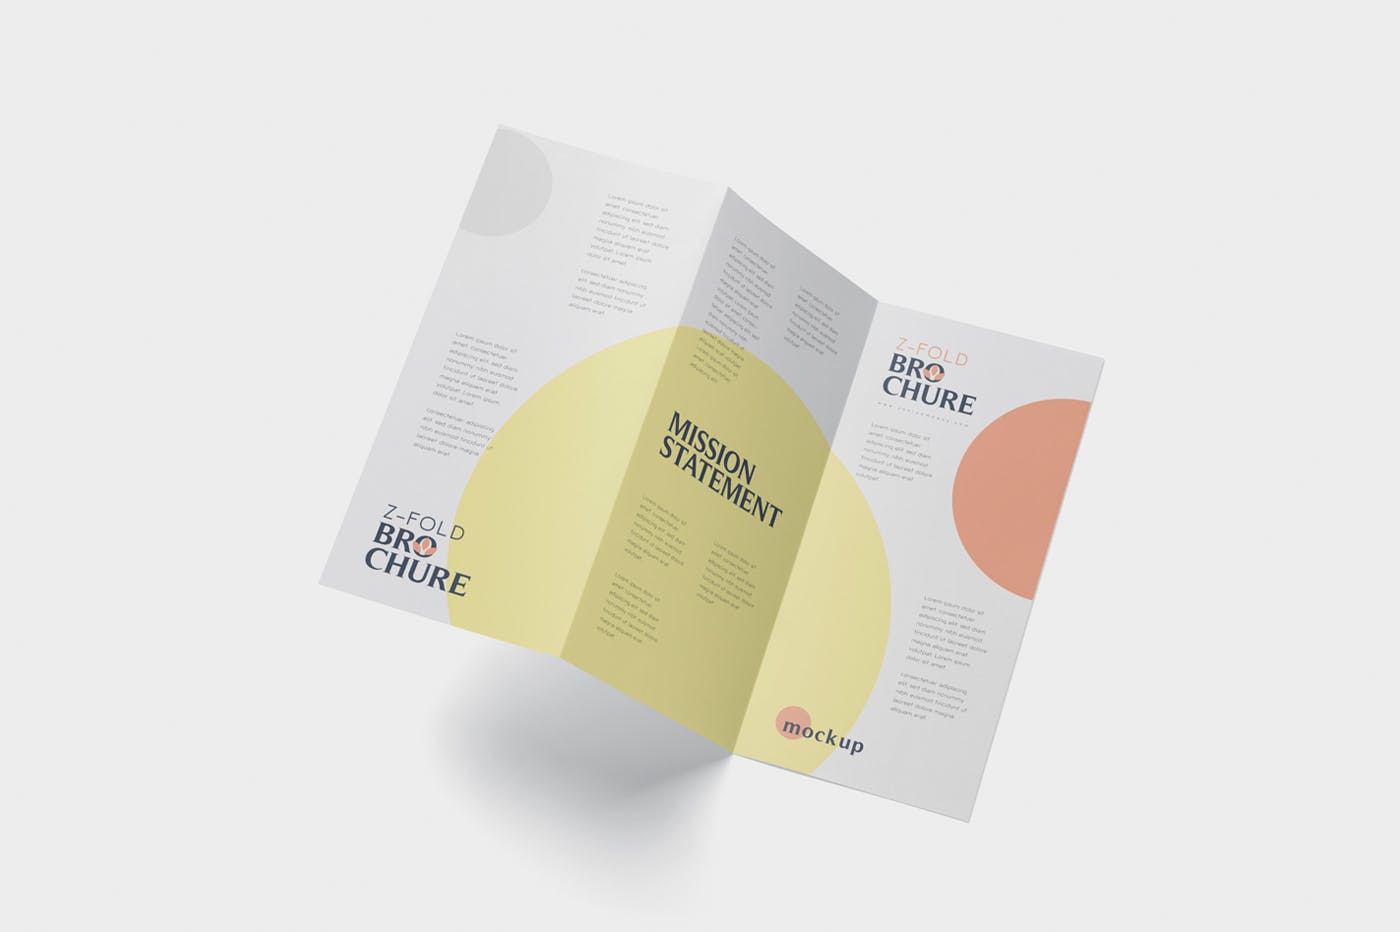 三折页设计风格企业传单/宣传单设计图样机第一素材精选 DL Z-Fold Brochure Mockup – 99 x 210 mm Size插图(3)